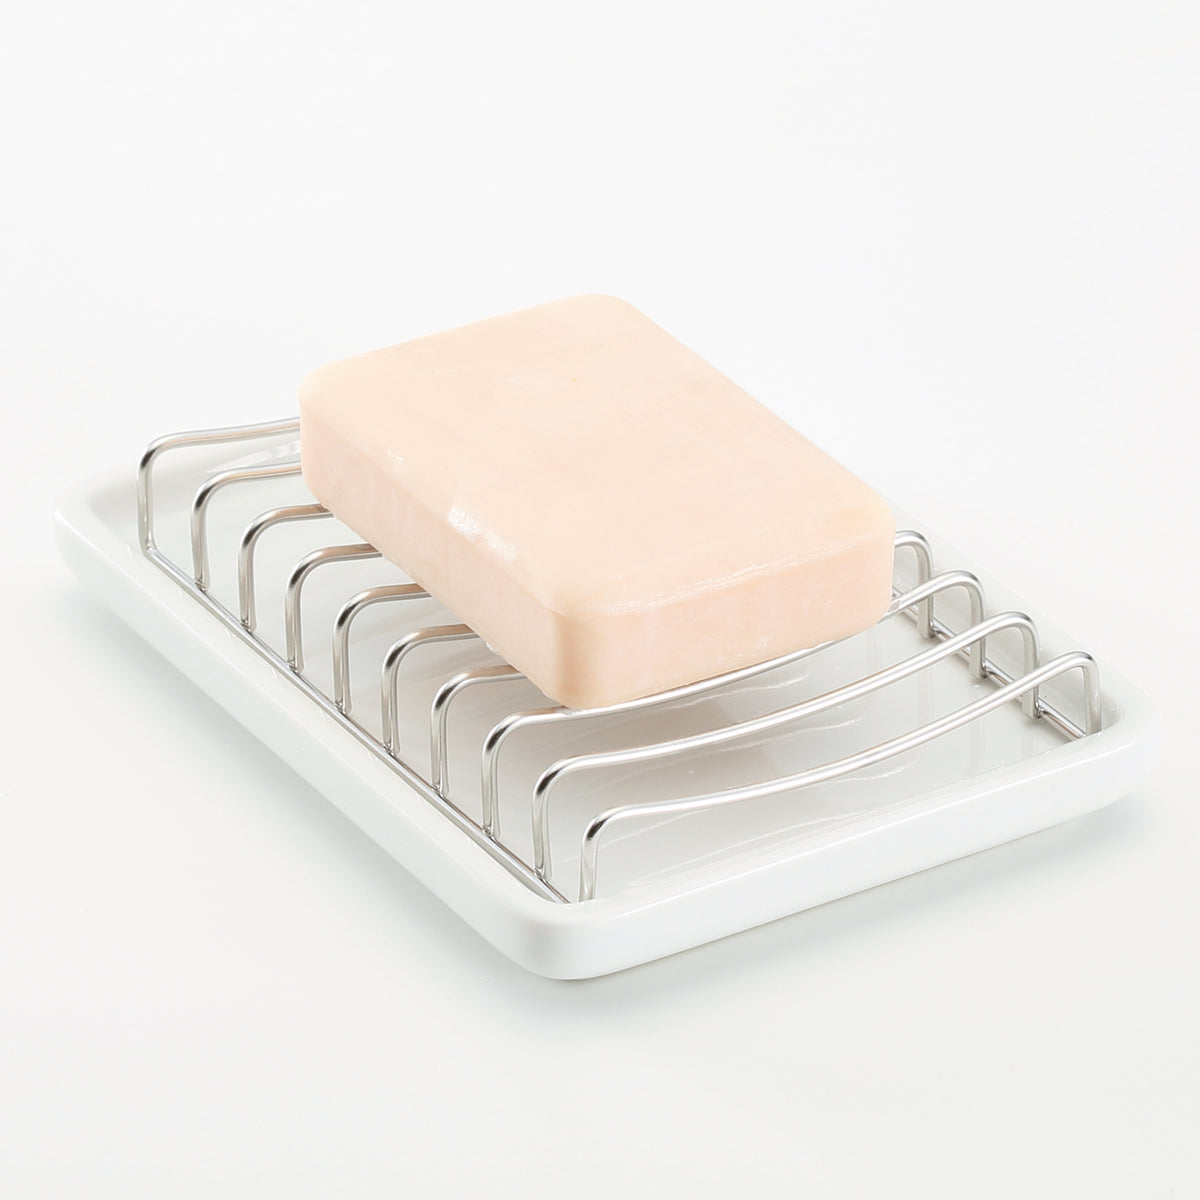 MUJI Urethane Foam Soap Dish 1 PC